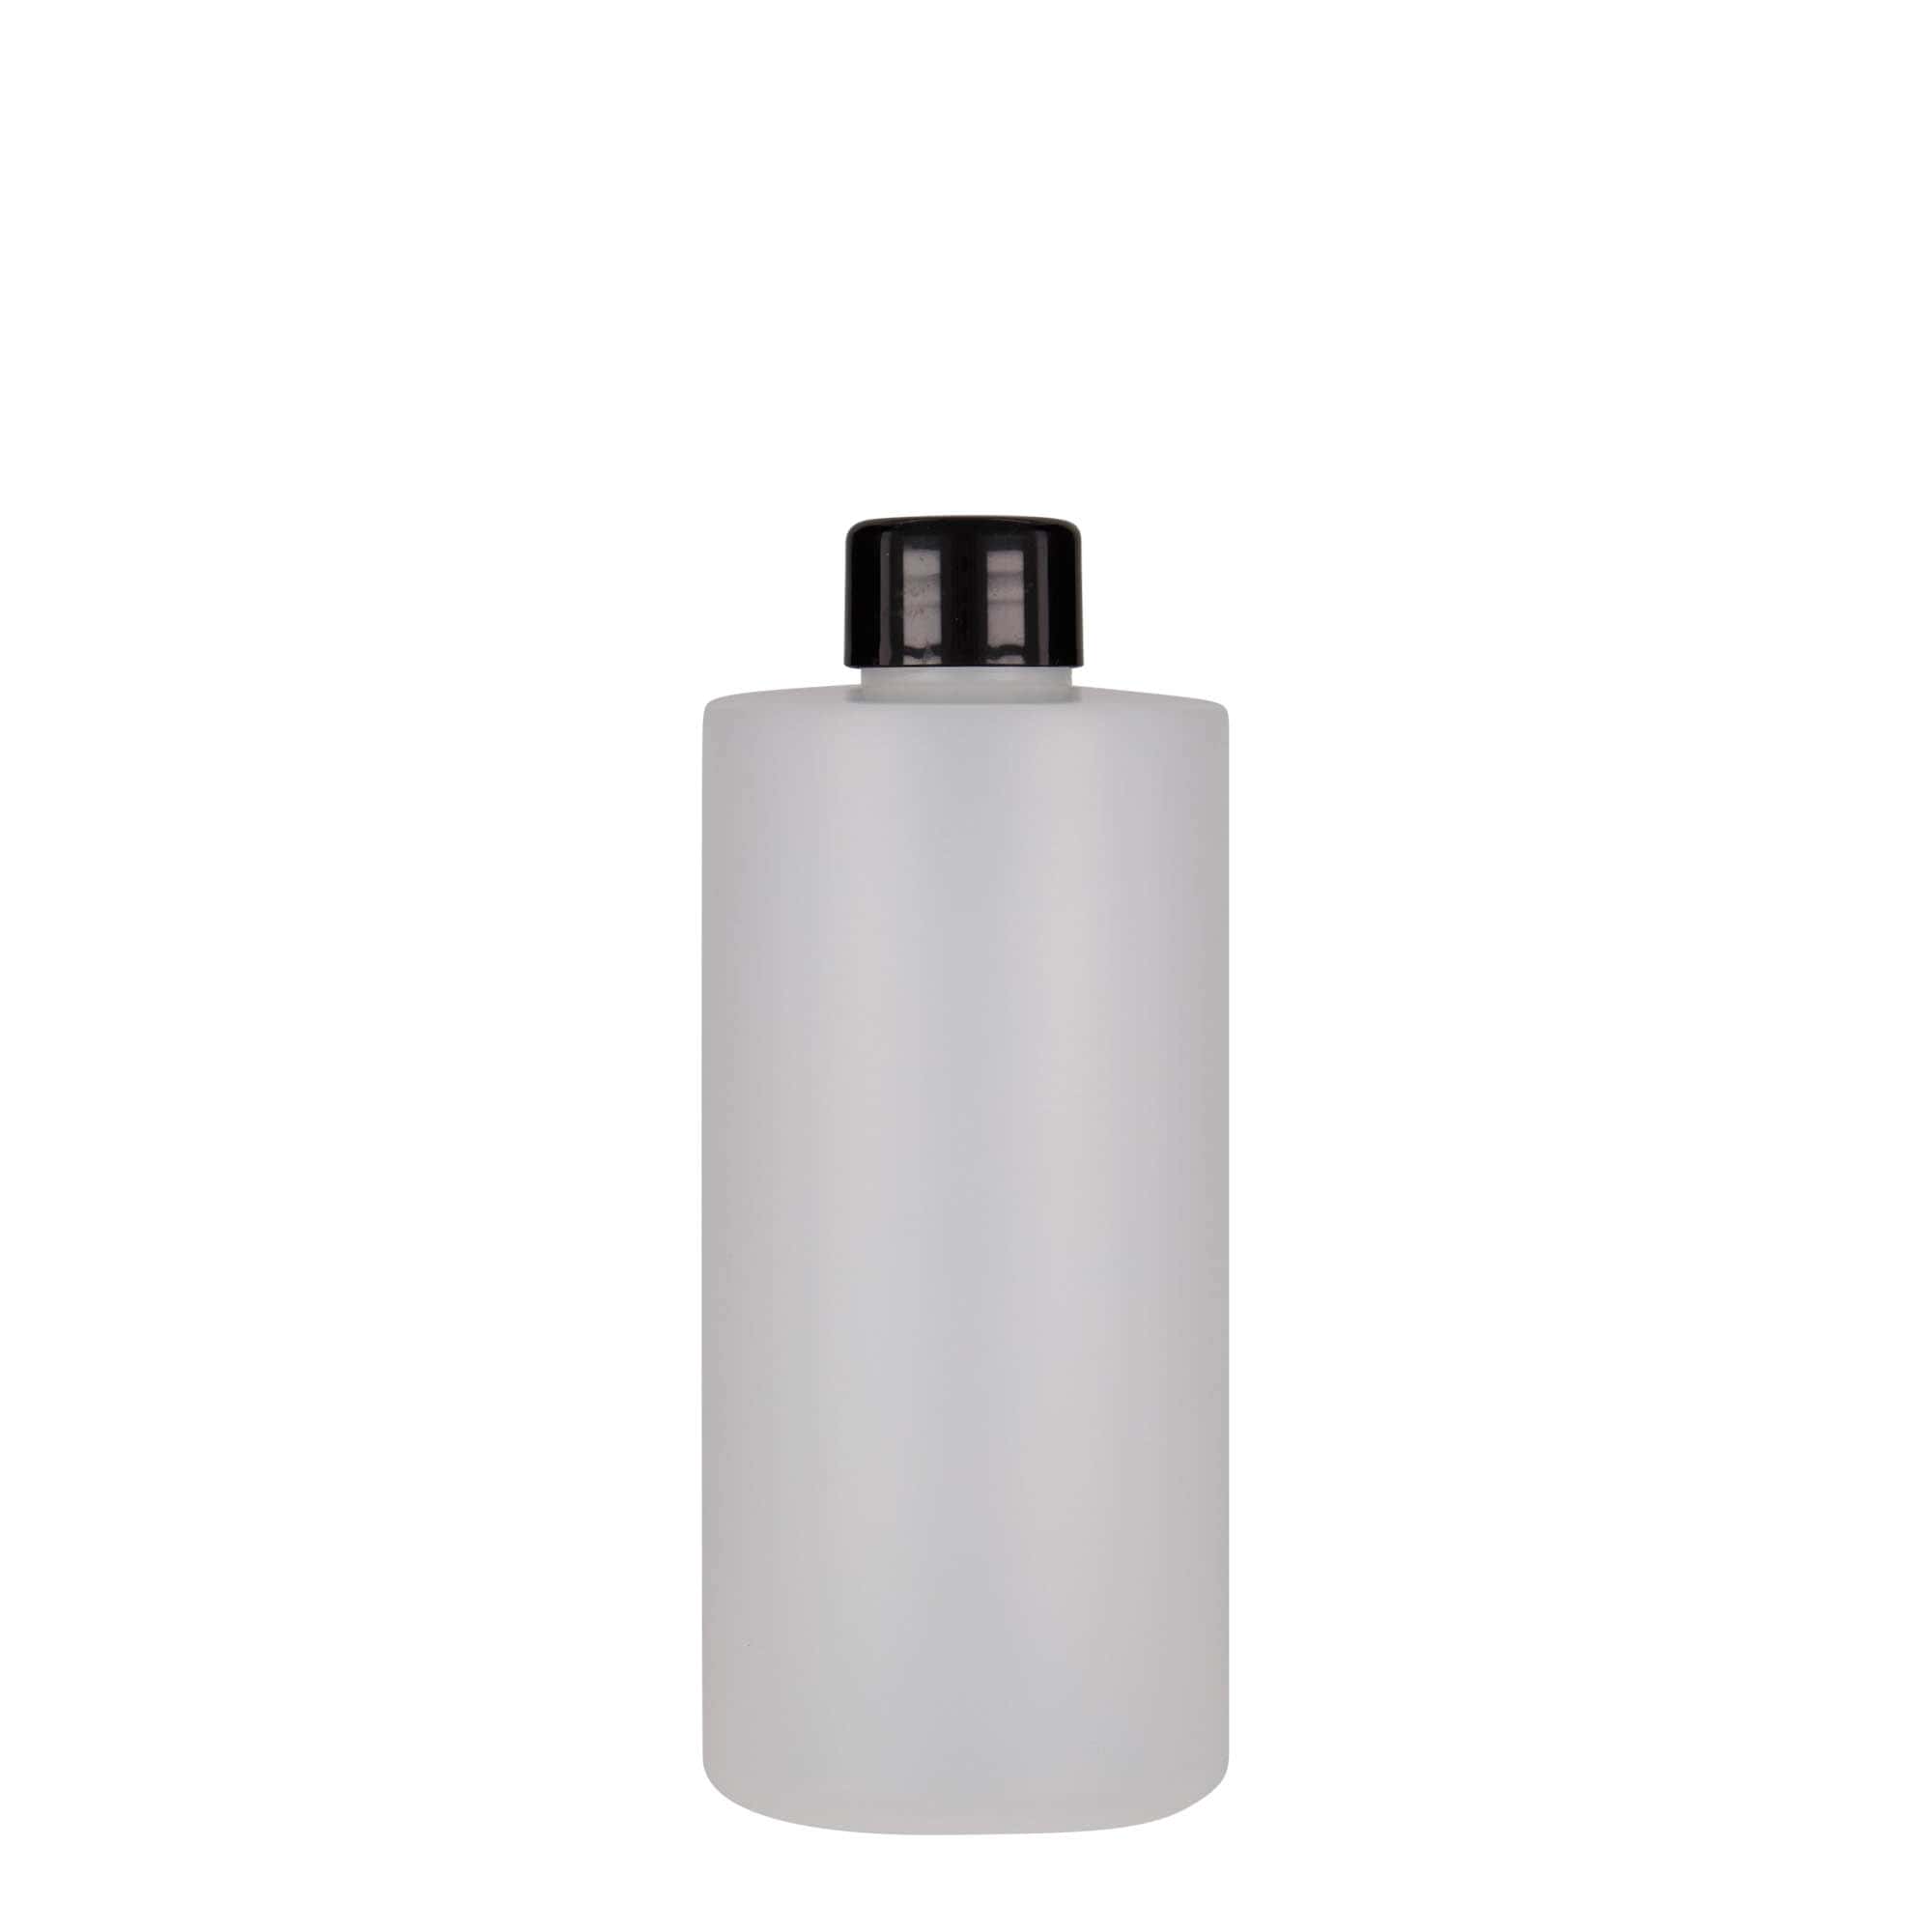 300 ml butelka z tworzywa sztucznego 'Pipe', HDPE, kolor biały, zamknięcie: GPI 24/410